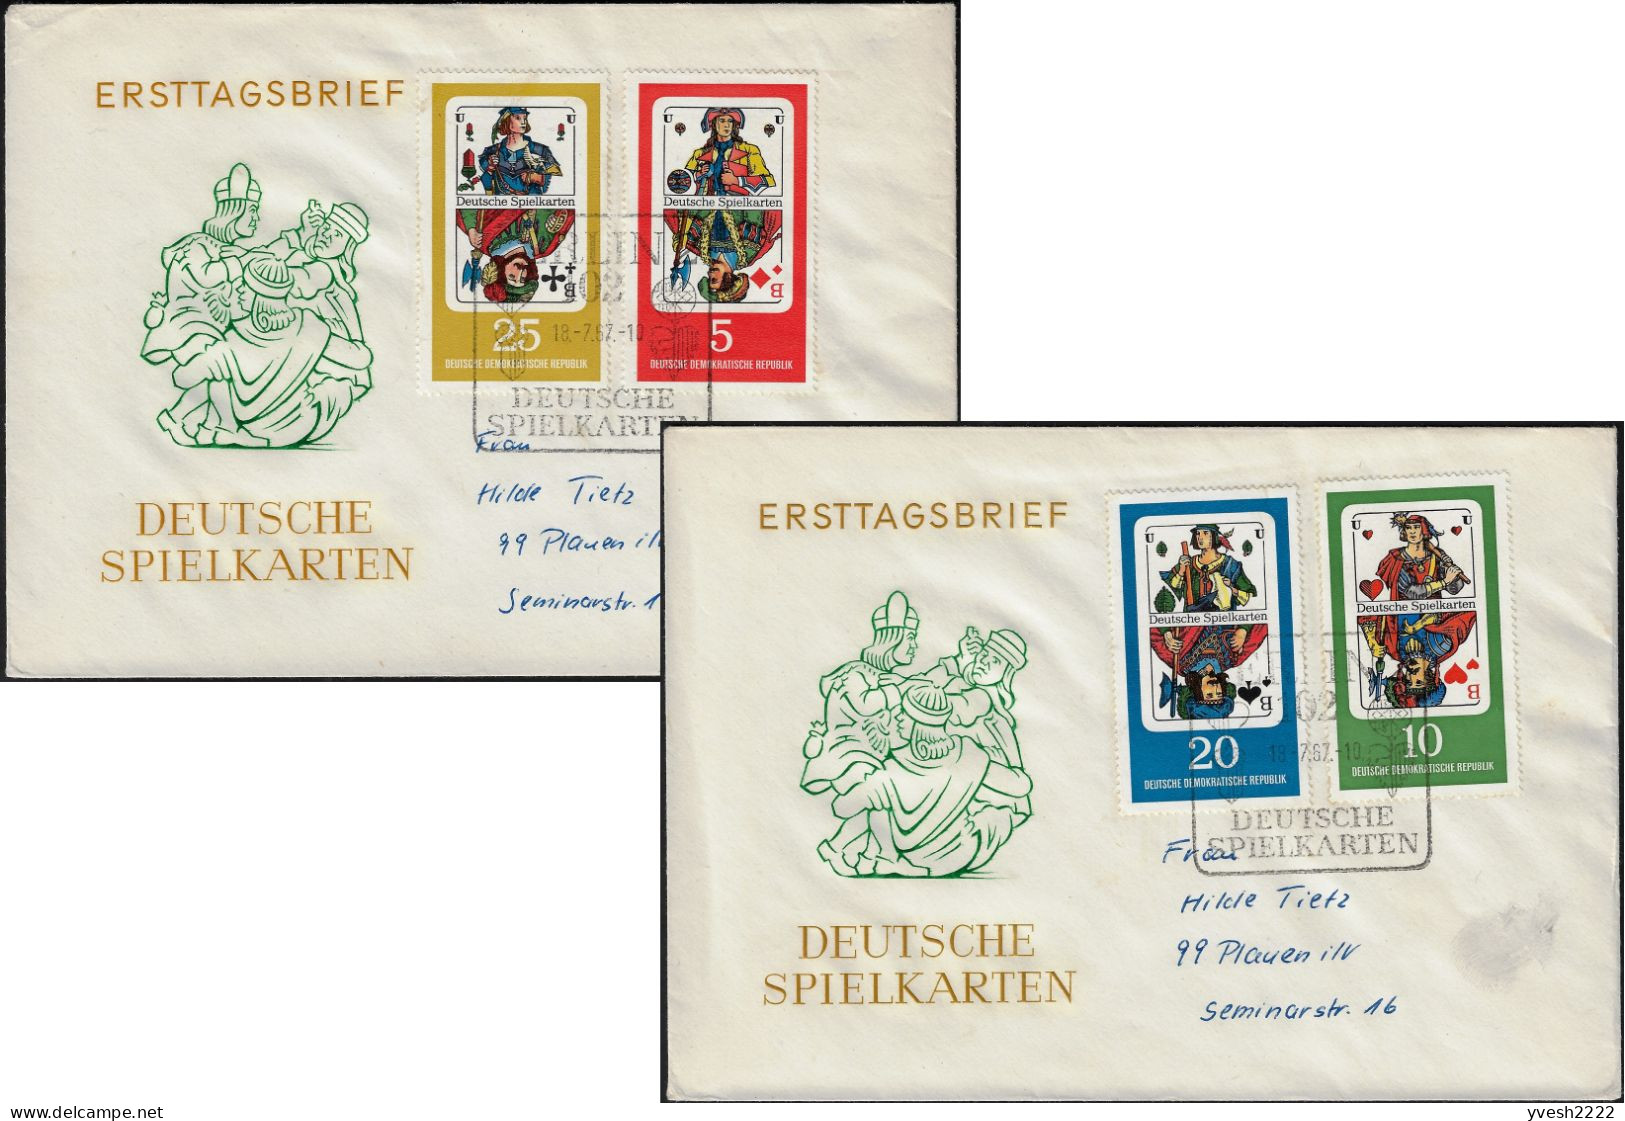 Allemagne Démocratique 1967 Y&T 995 à 998 Sur FDC. Cartes à Jouer. Valets De Carreau, De Coeur, De Pique Et De Trèfle - Unclassified